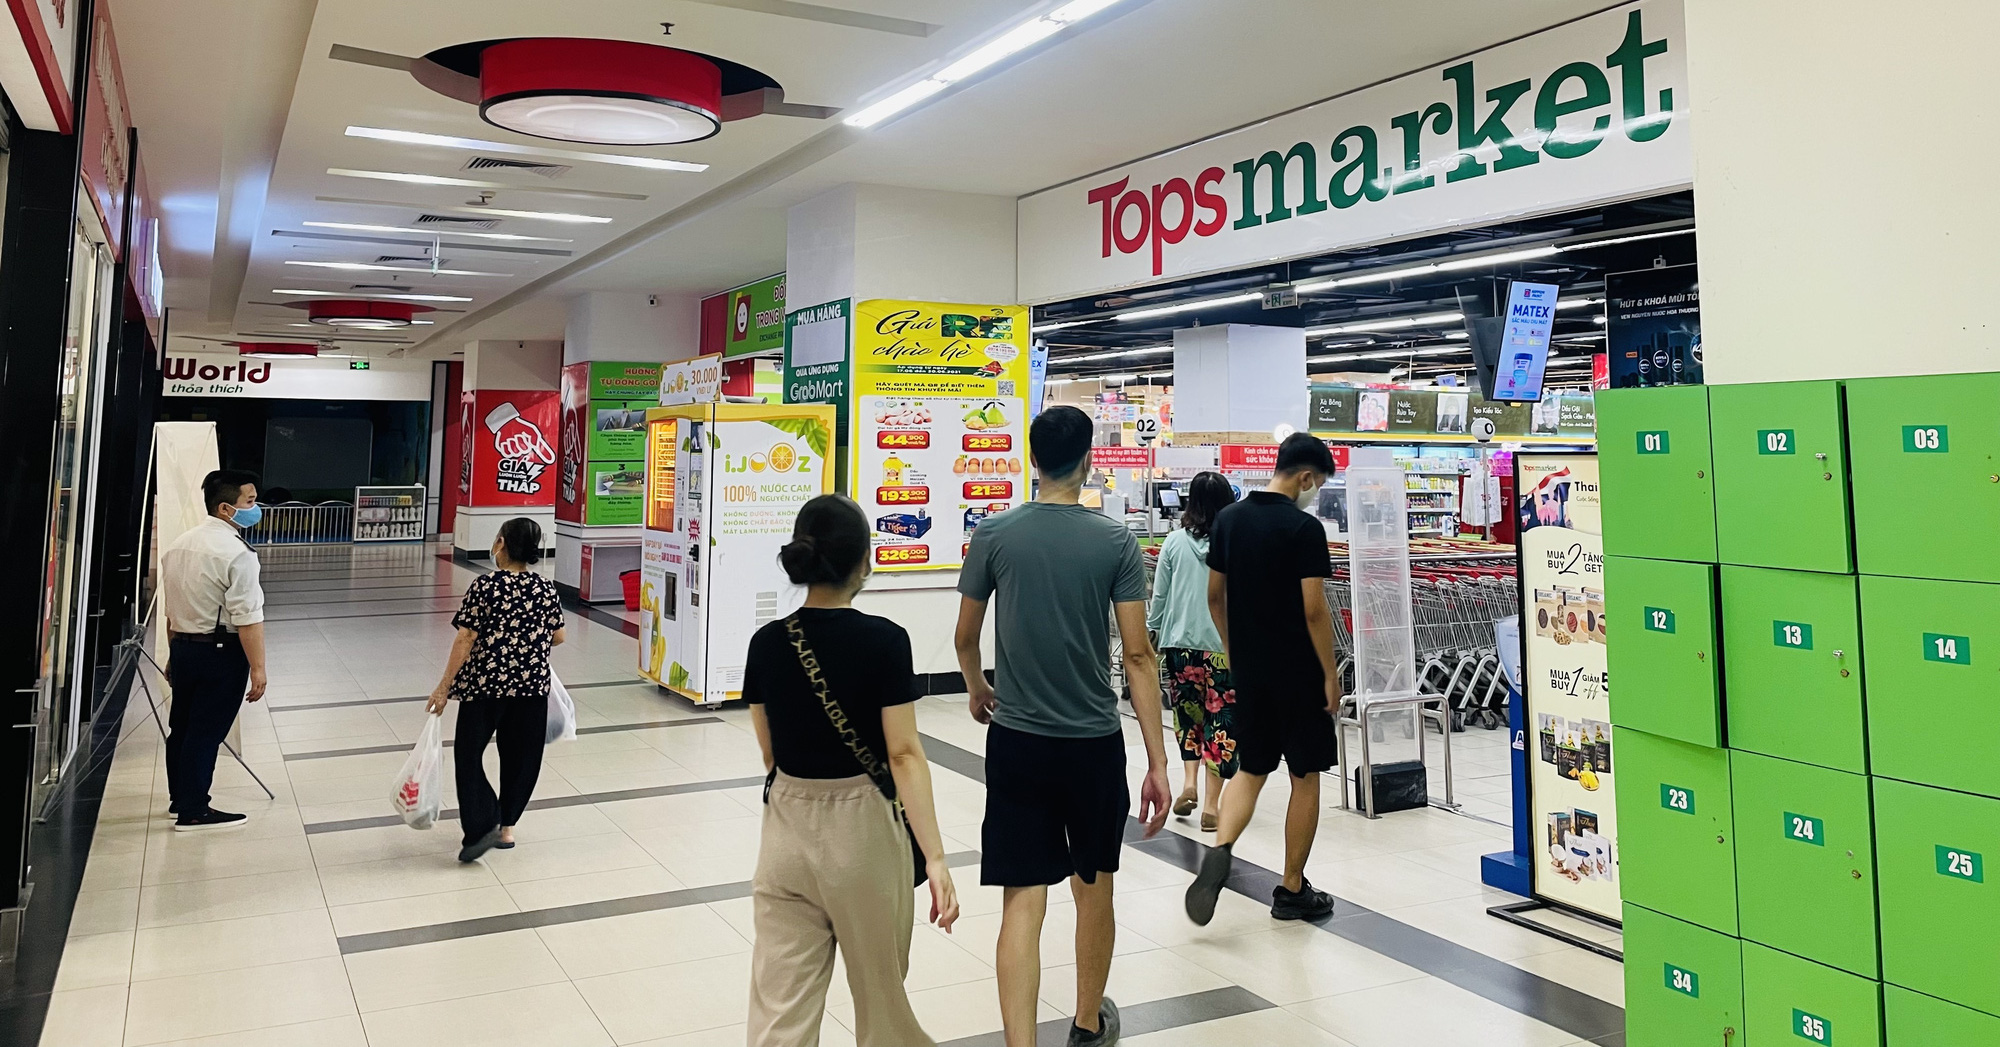 Hà Nội: Loạt siêu thị Big C đổi tên thành Tops Market